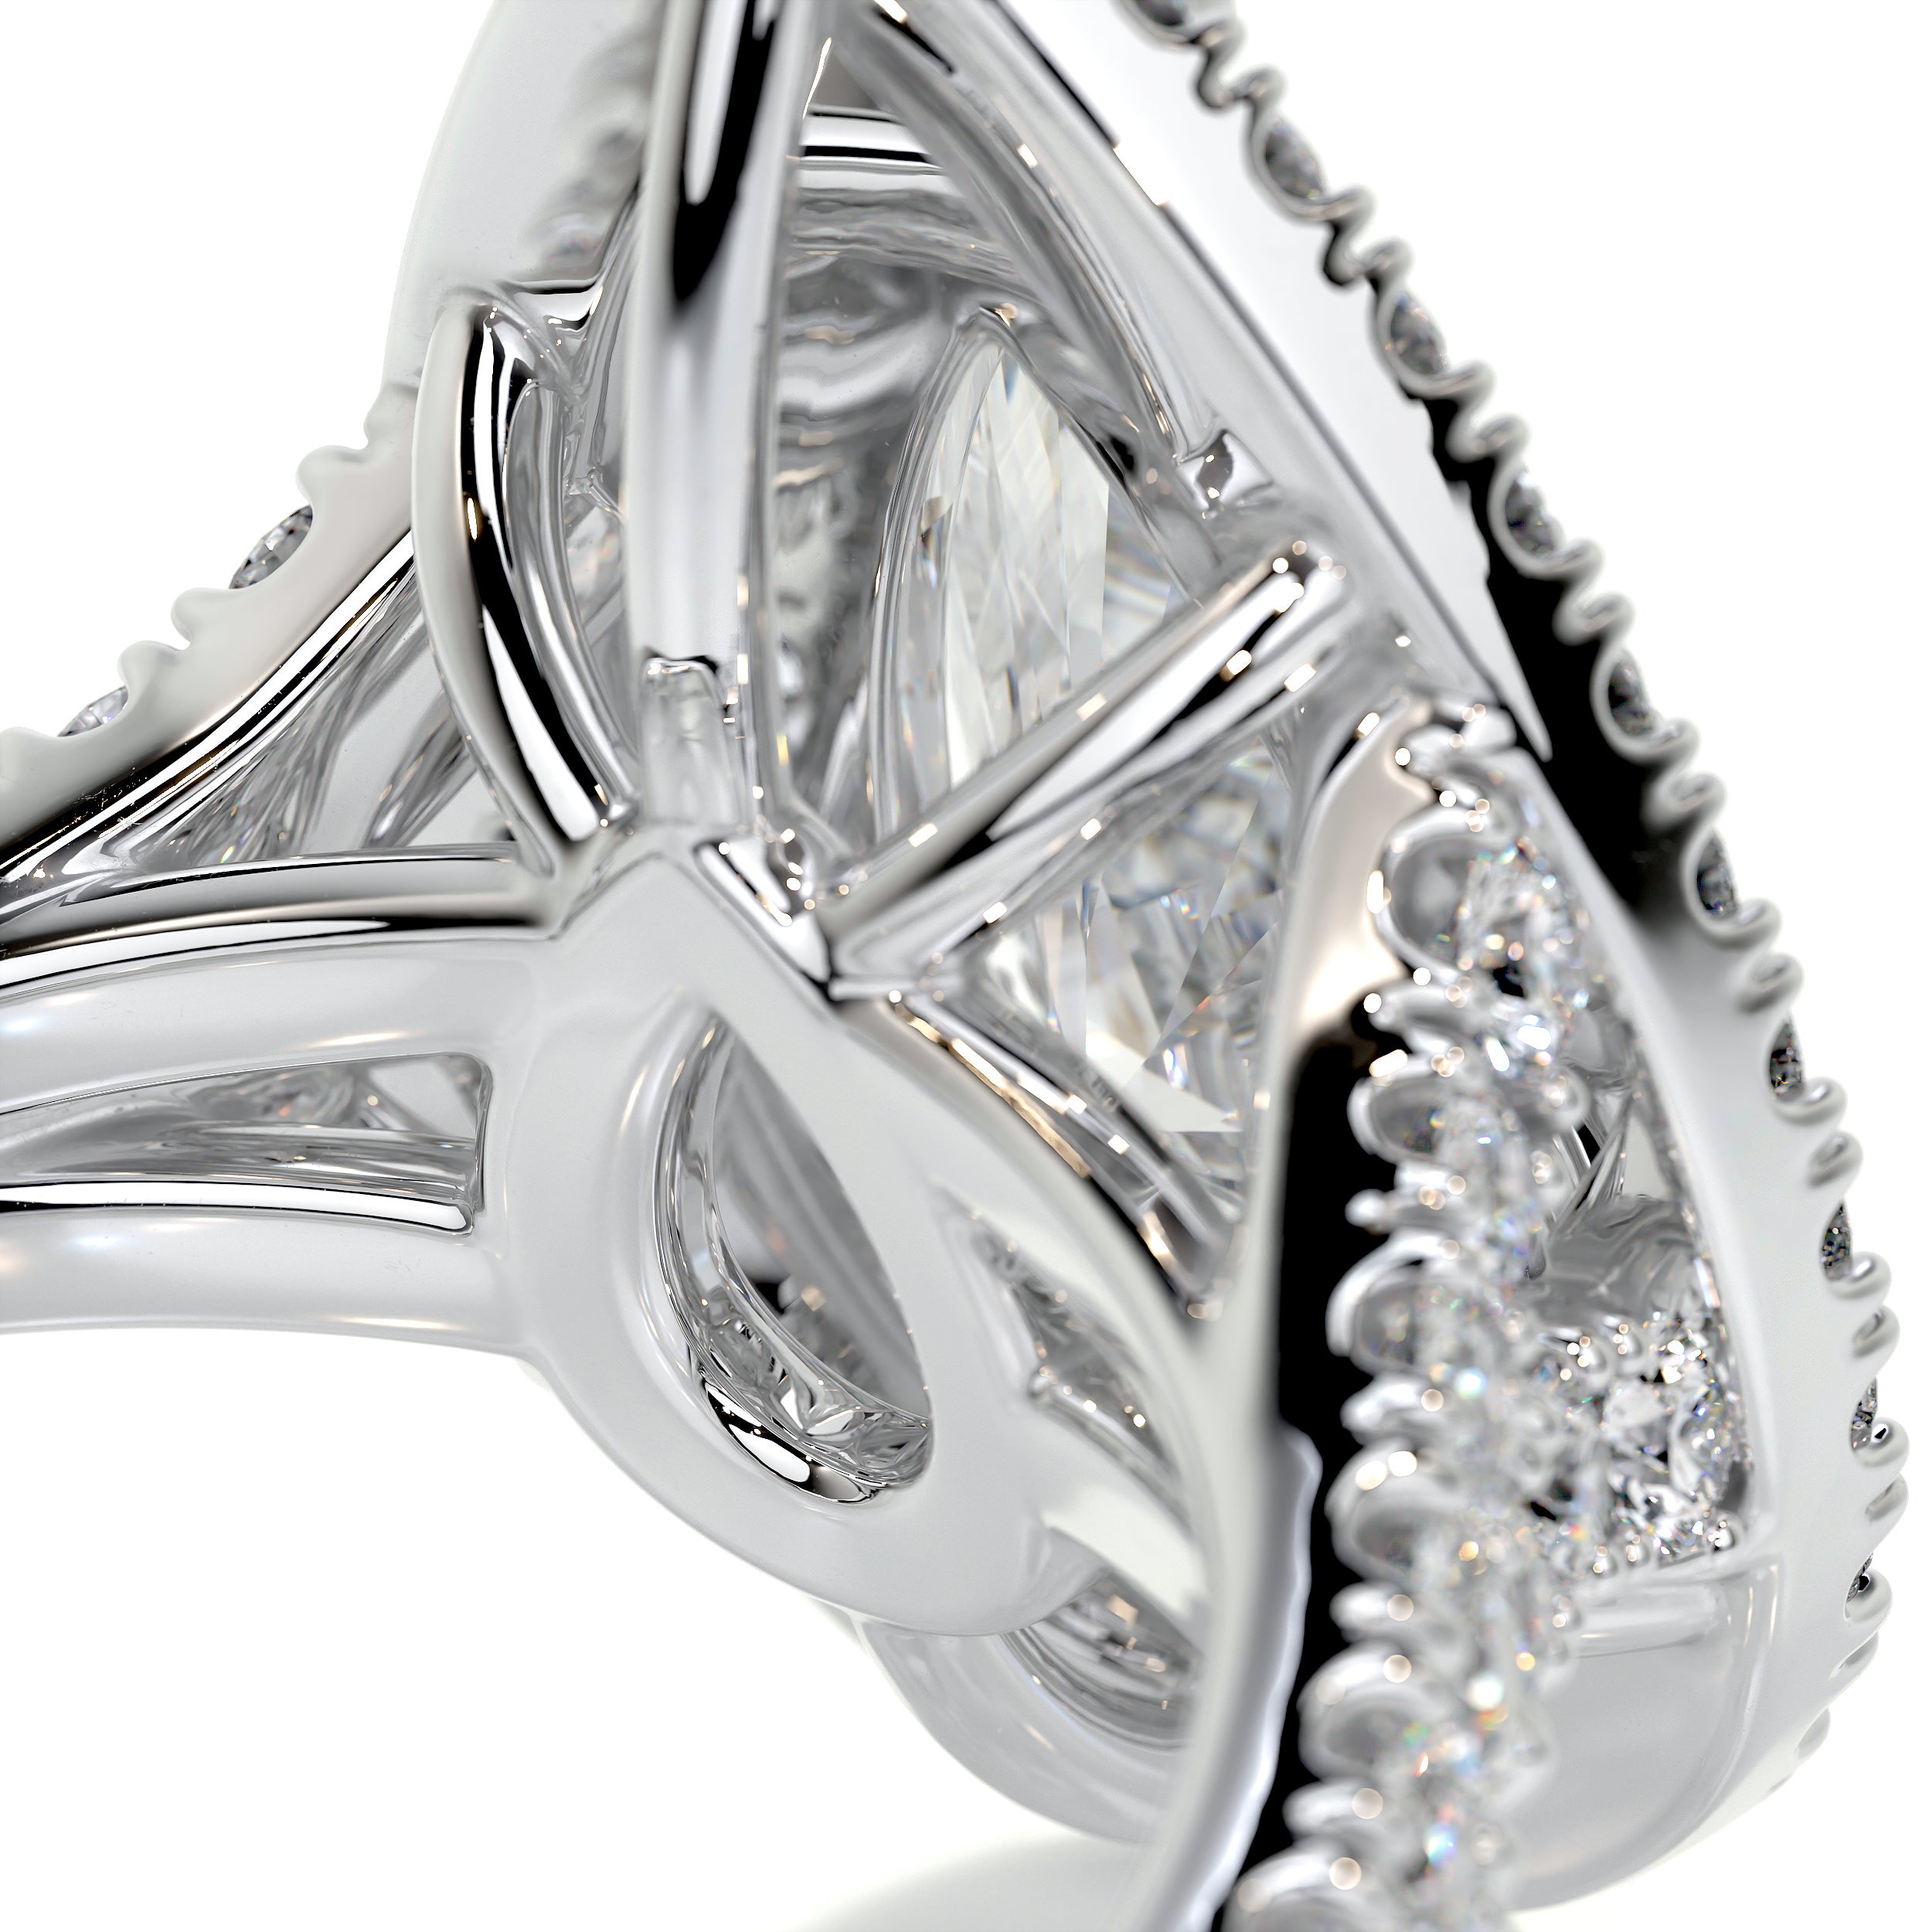 Melanie Diamond Engagement Ring   (1.75 Carat) -Platinum